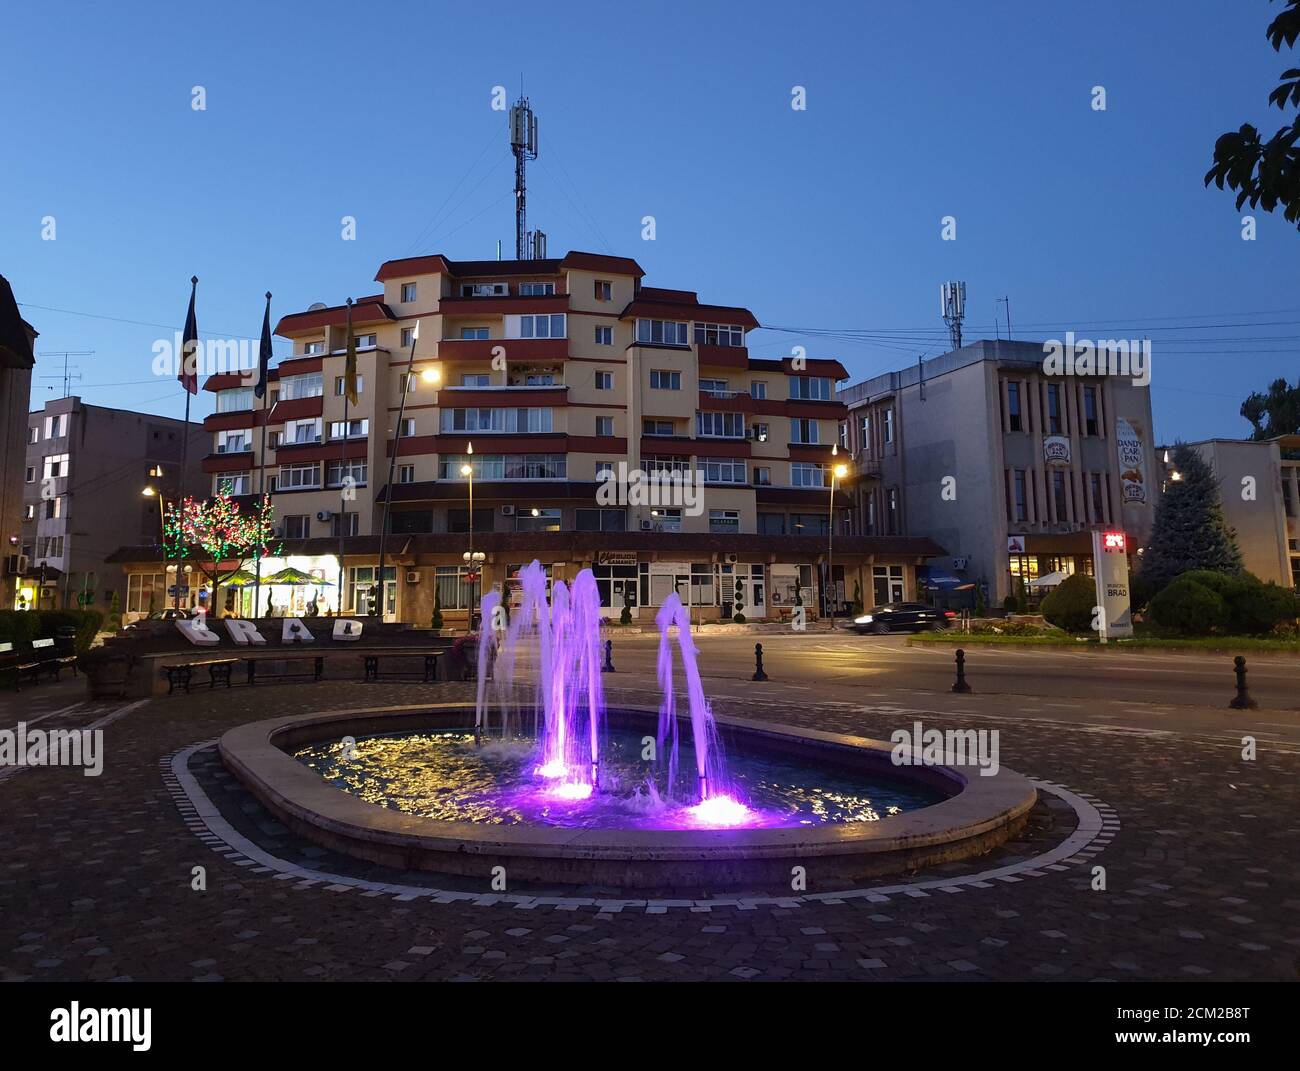 Brad Stadtzentrum Brunnen am Abend. Sommer in der Dämmerung Brunnen mit lila Licht im Stadtzentrum Brad, Hunedoara, Rumänien Stockfoto